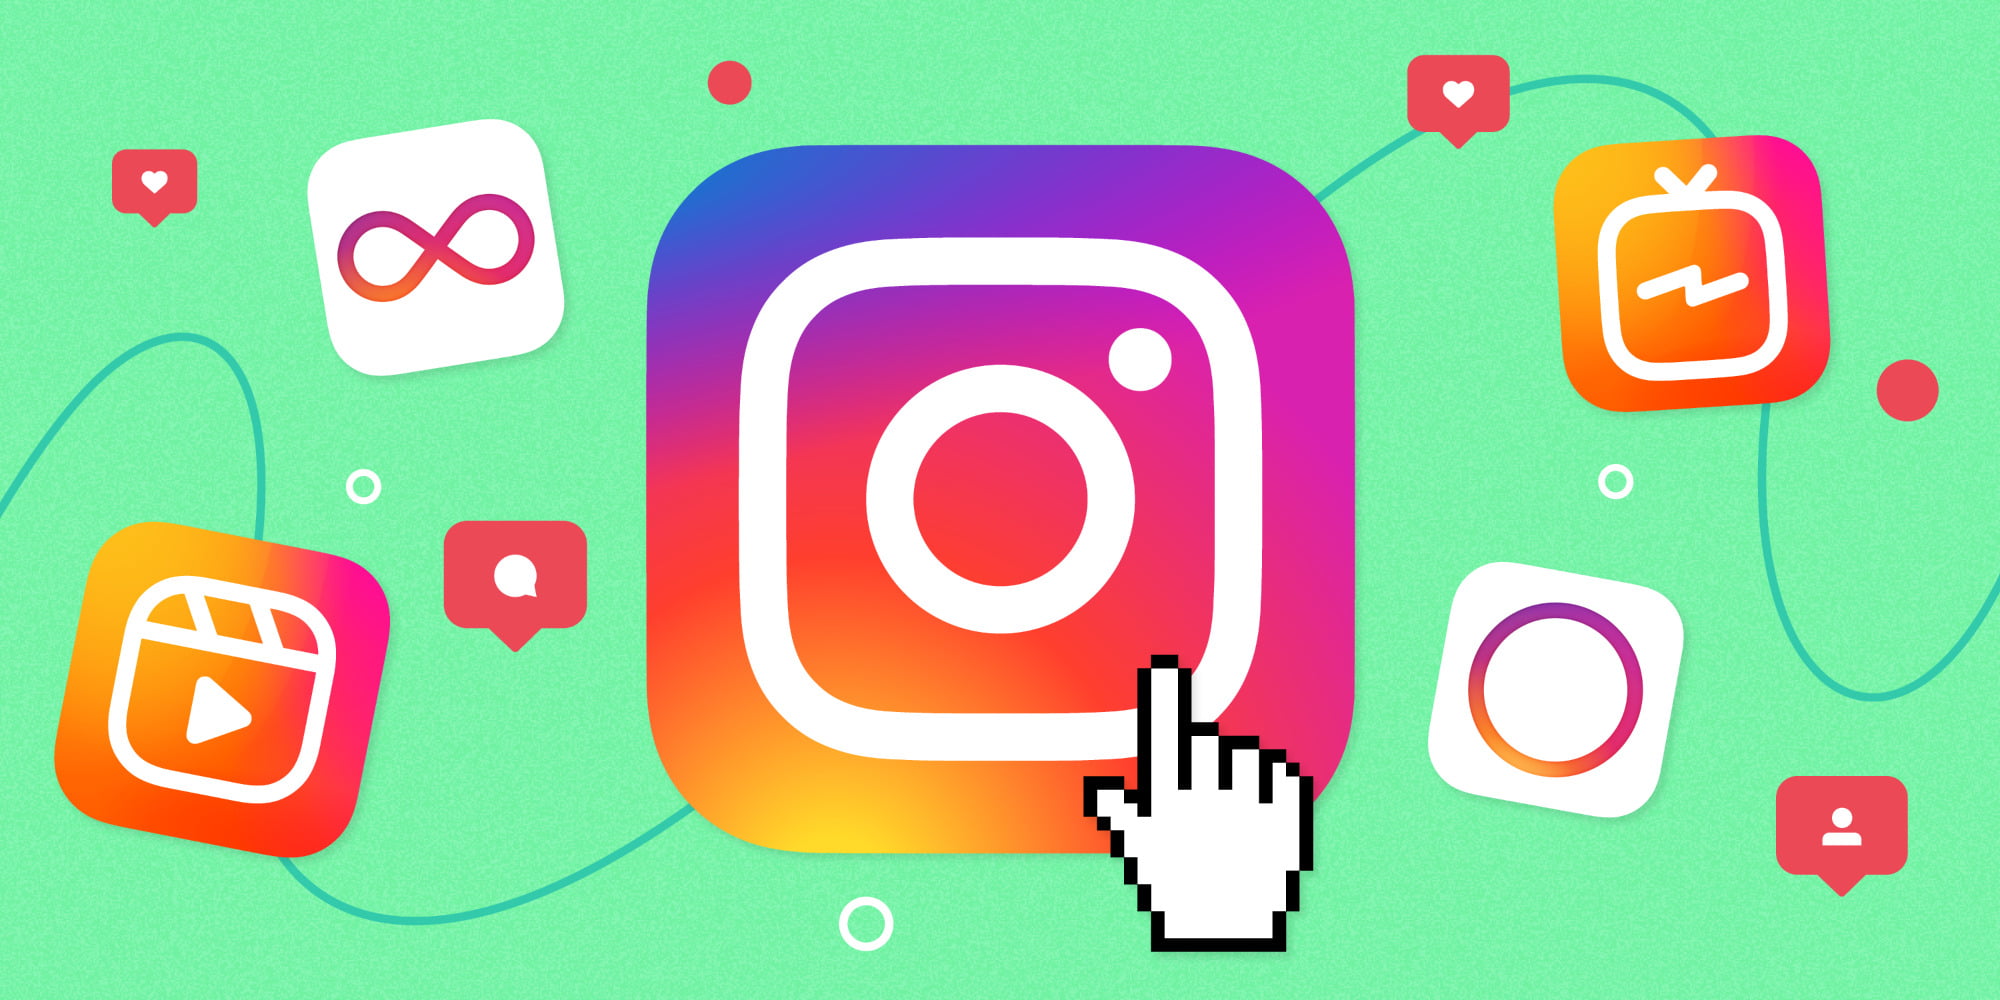 Instagram uzun süre scroll yaparsanız 'mola vermenizi' hatırlatacak